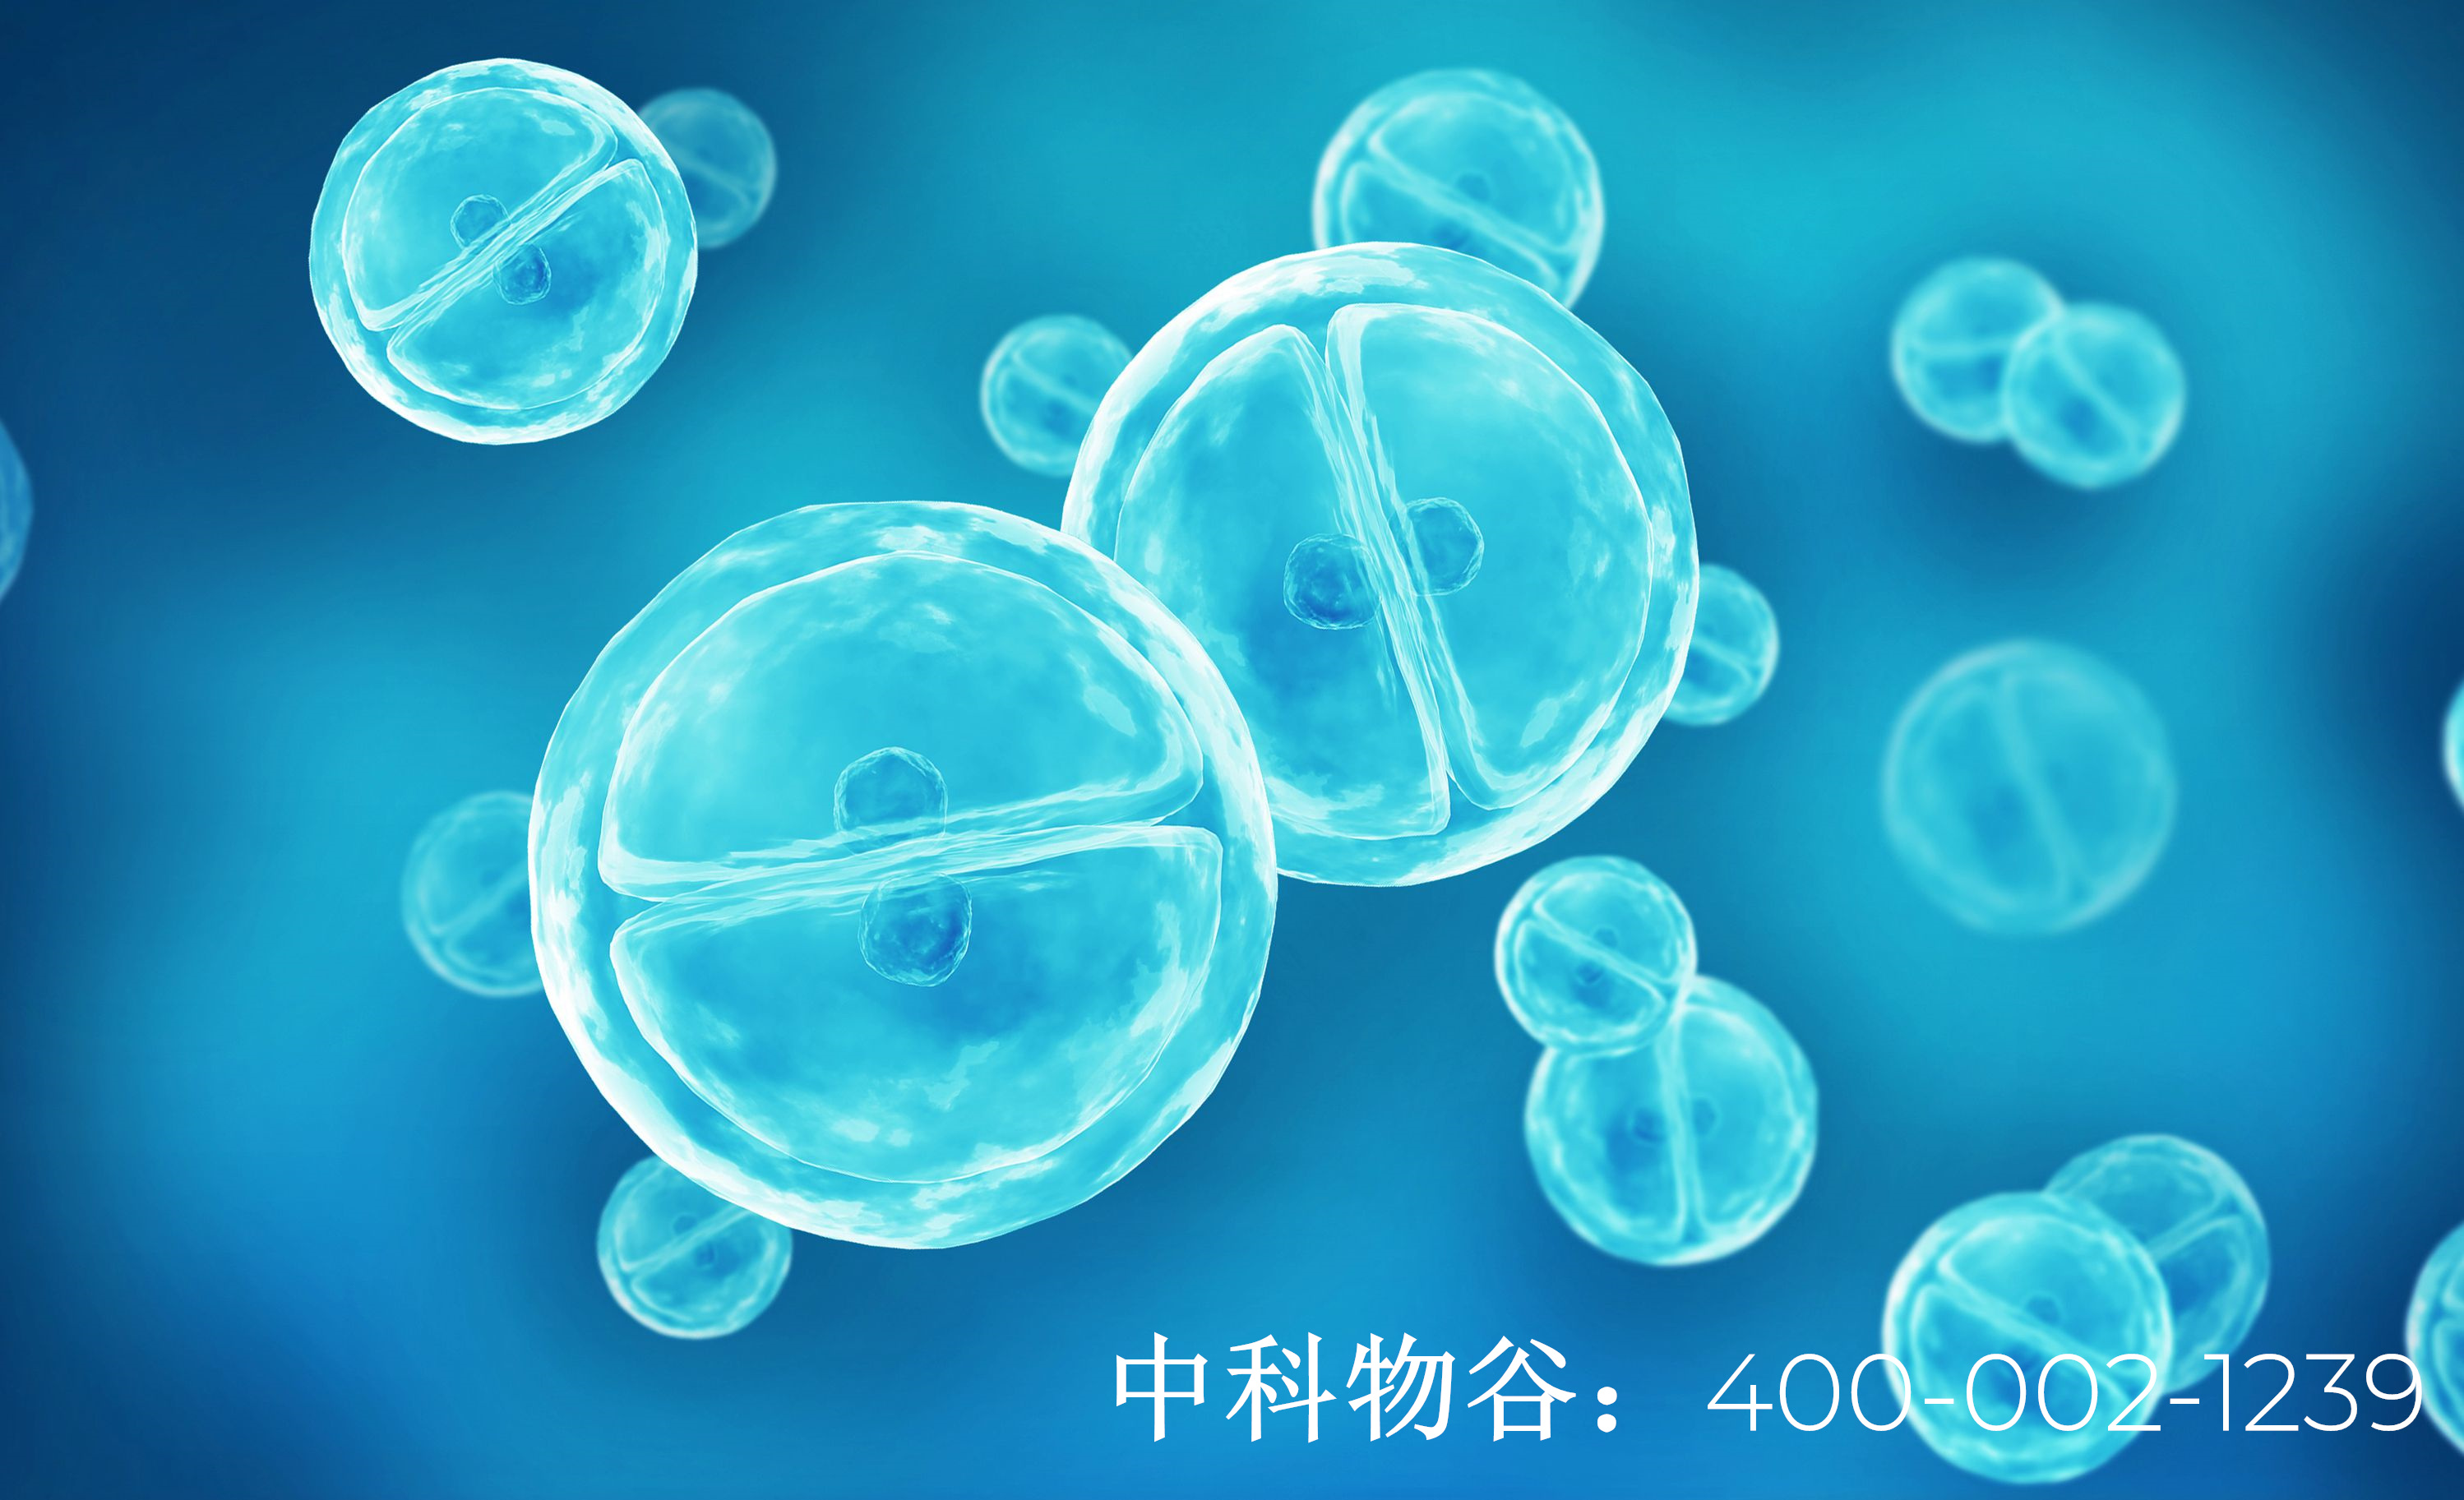 中国最大干细胞产品公司排名